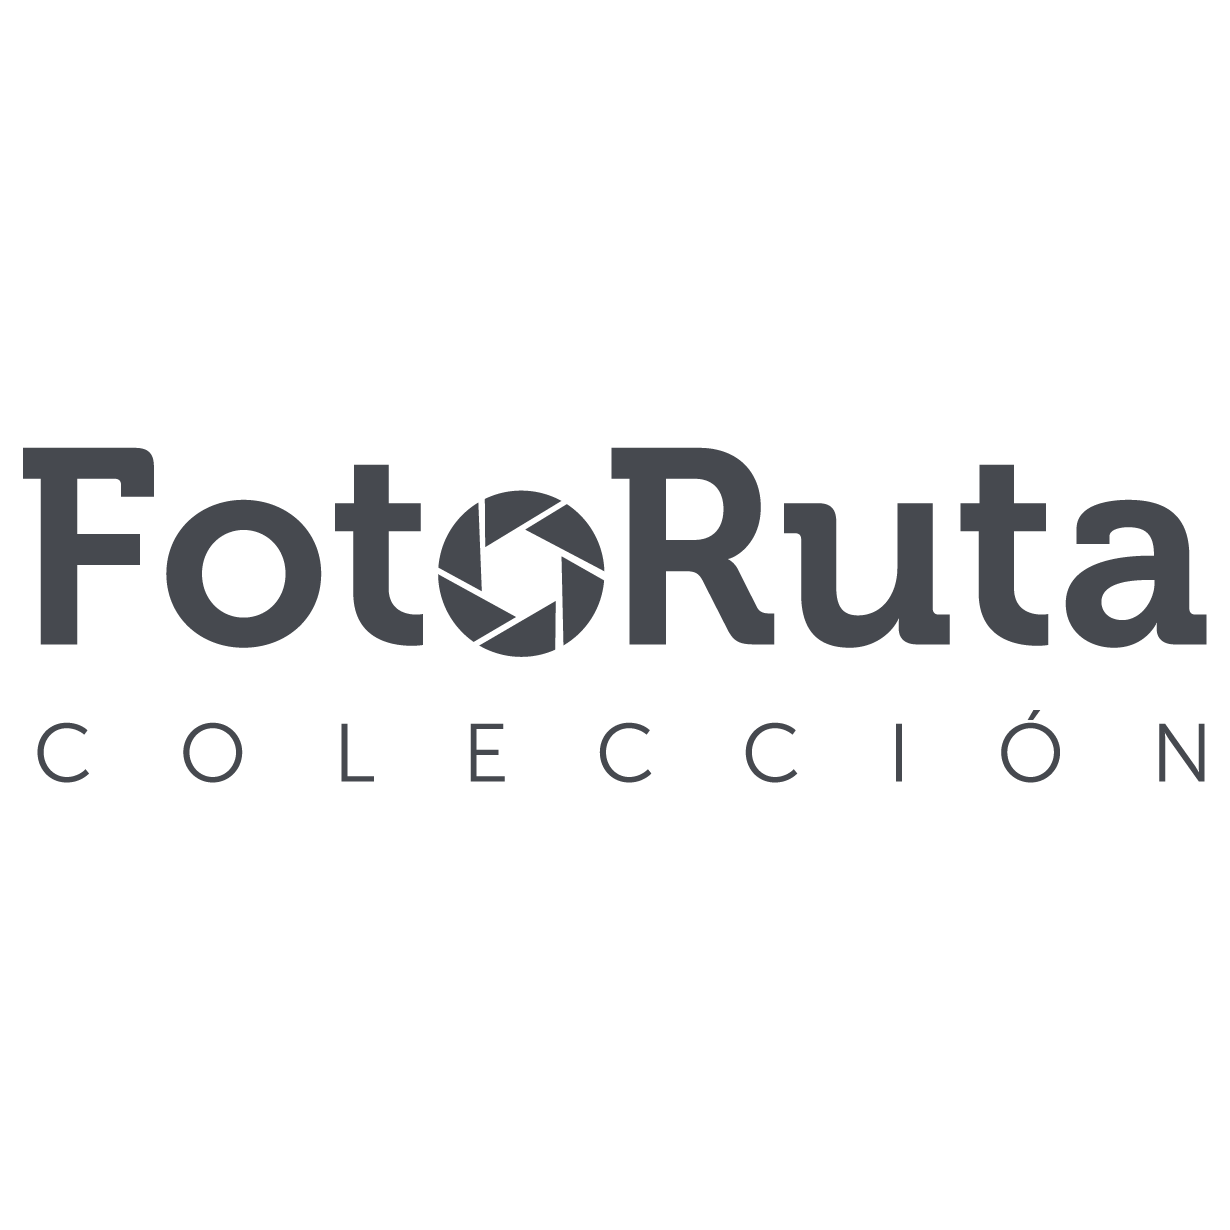 Logo_FotoRuta_APERTURA